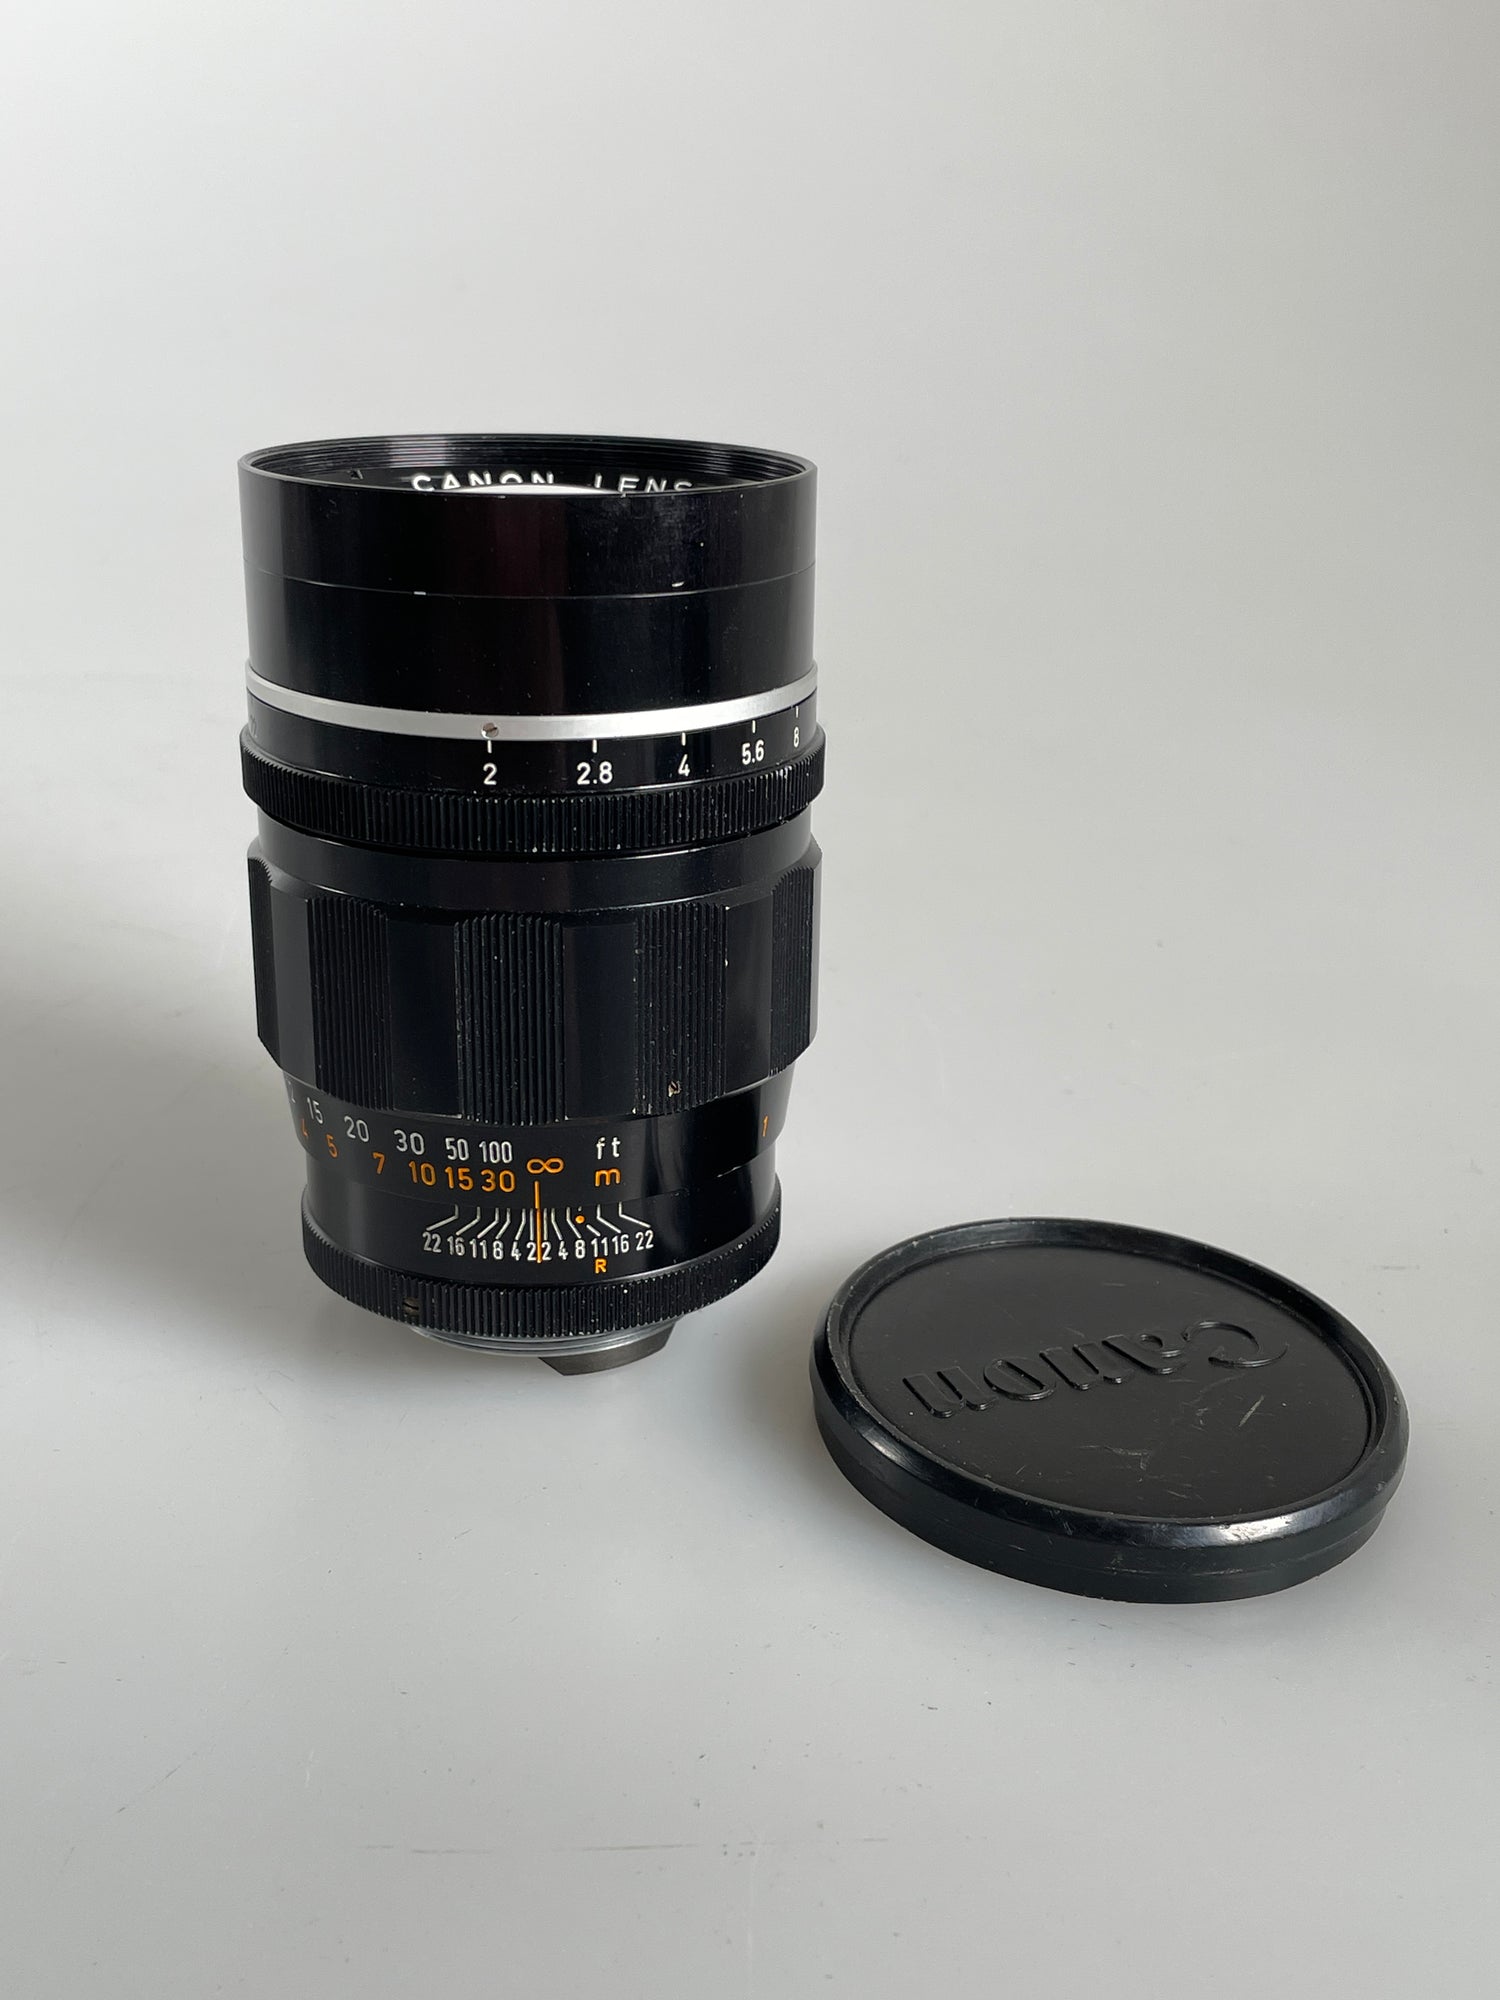 Rangefinder Camera Lenses